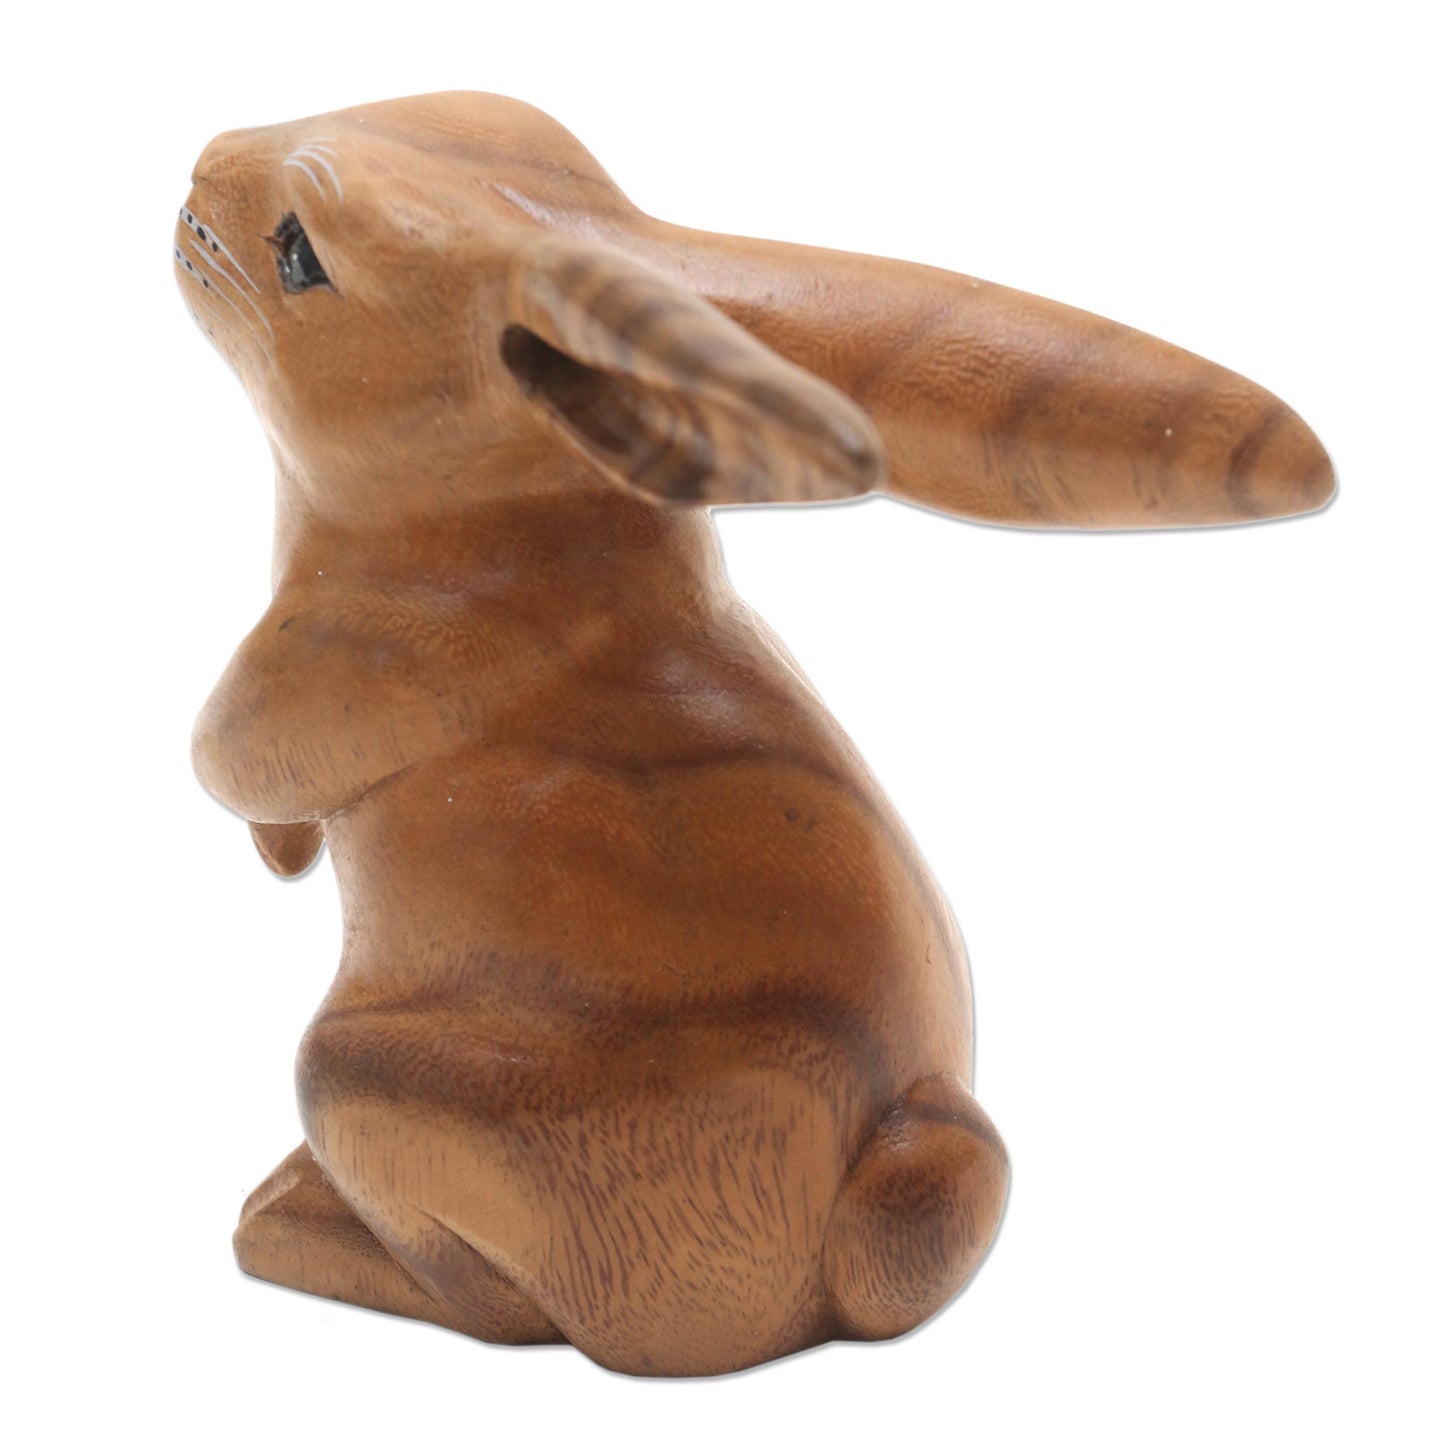 Adorable Rabbit in Brown Handmade Brown Bunny Sculpture